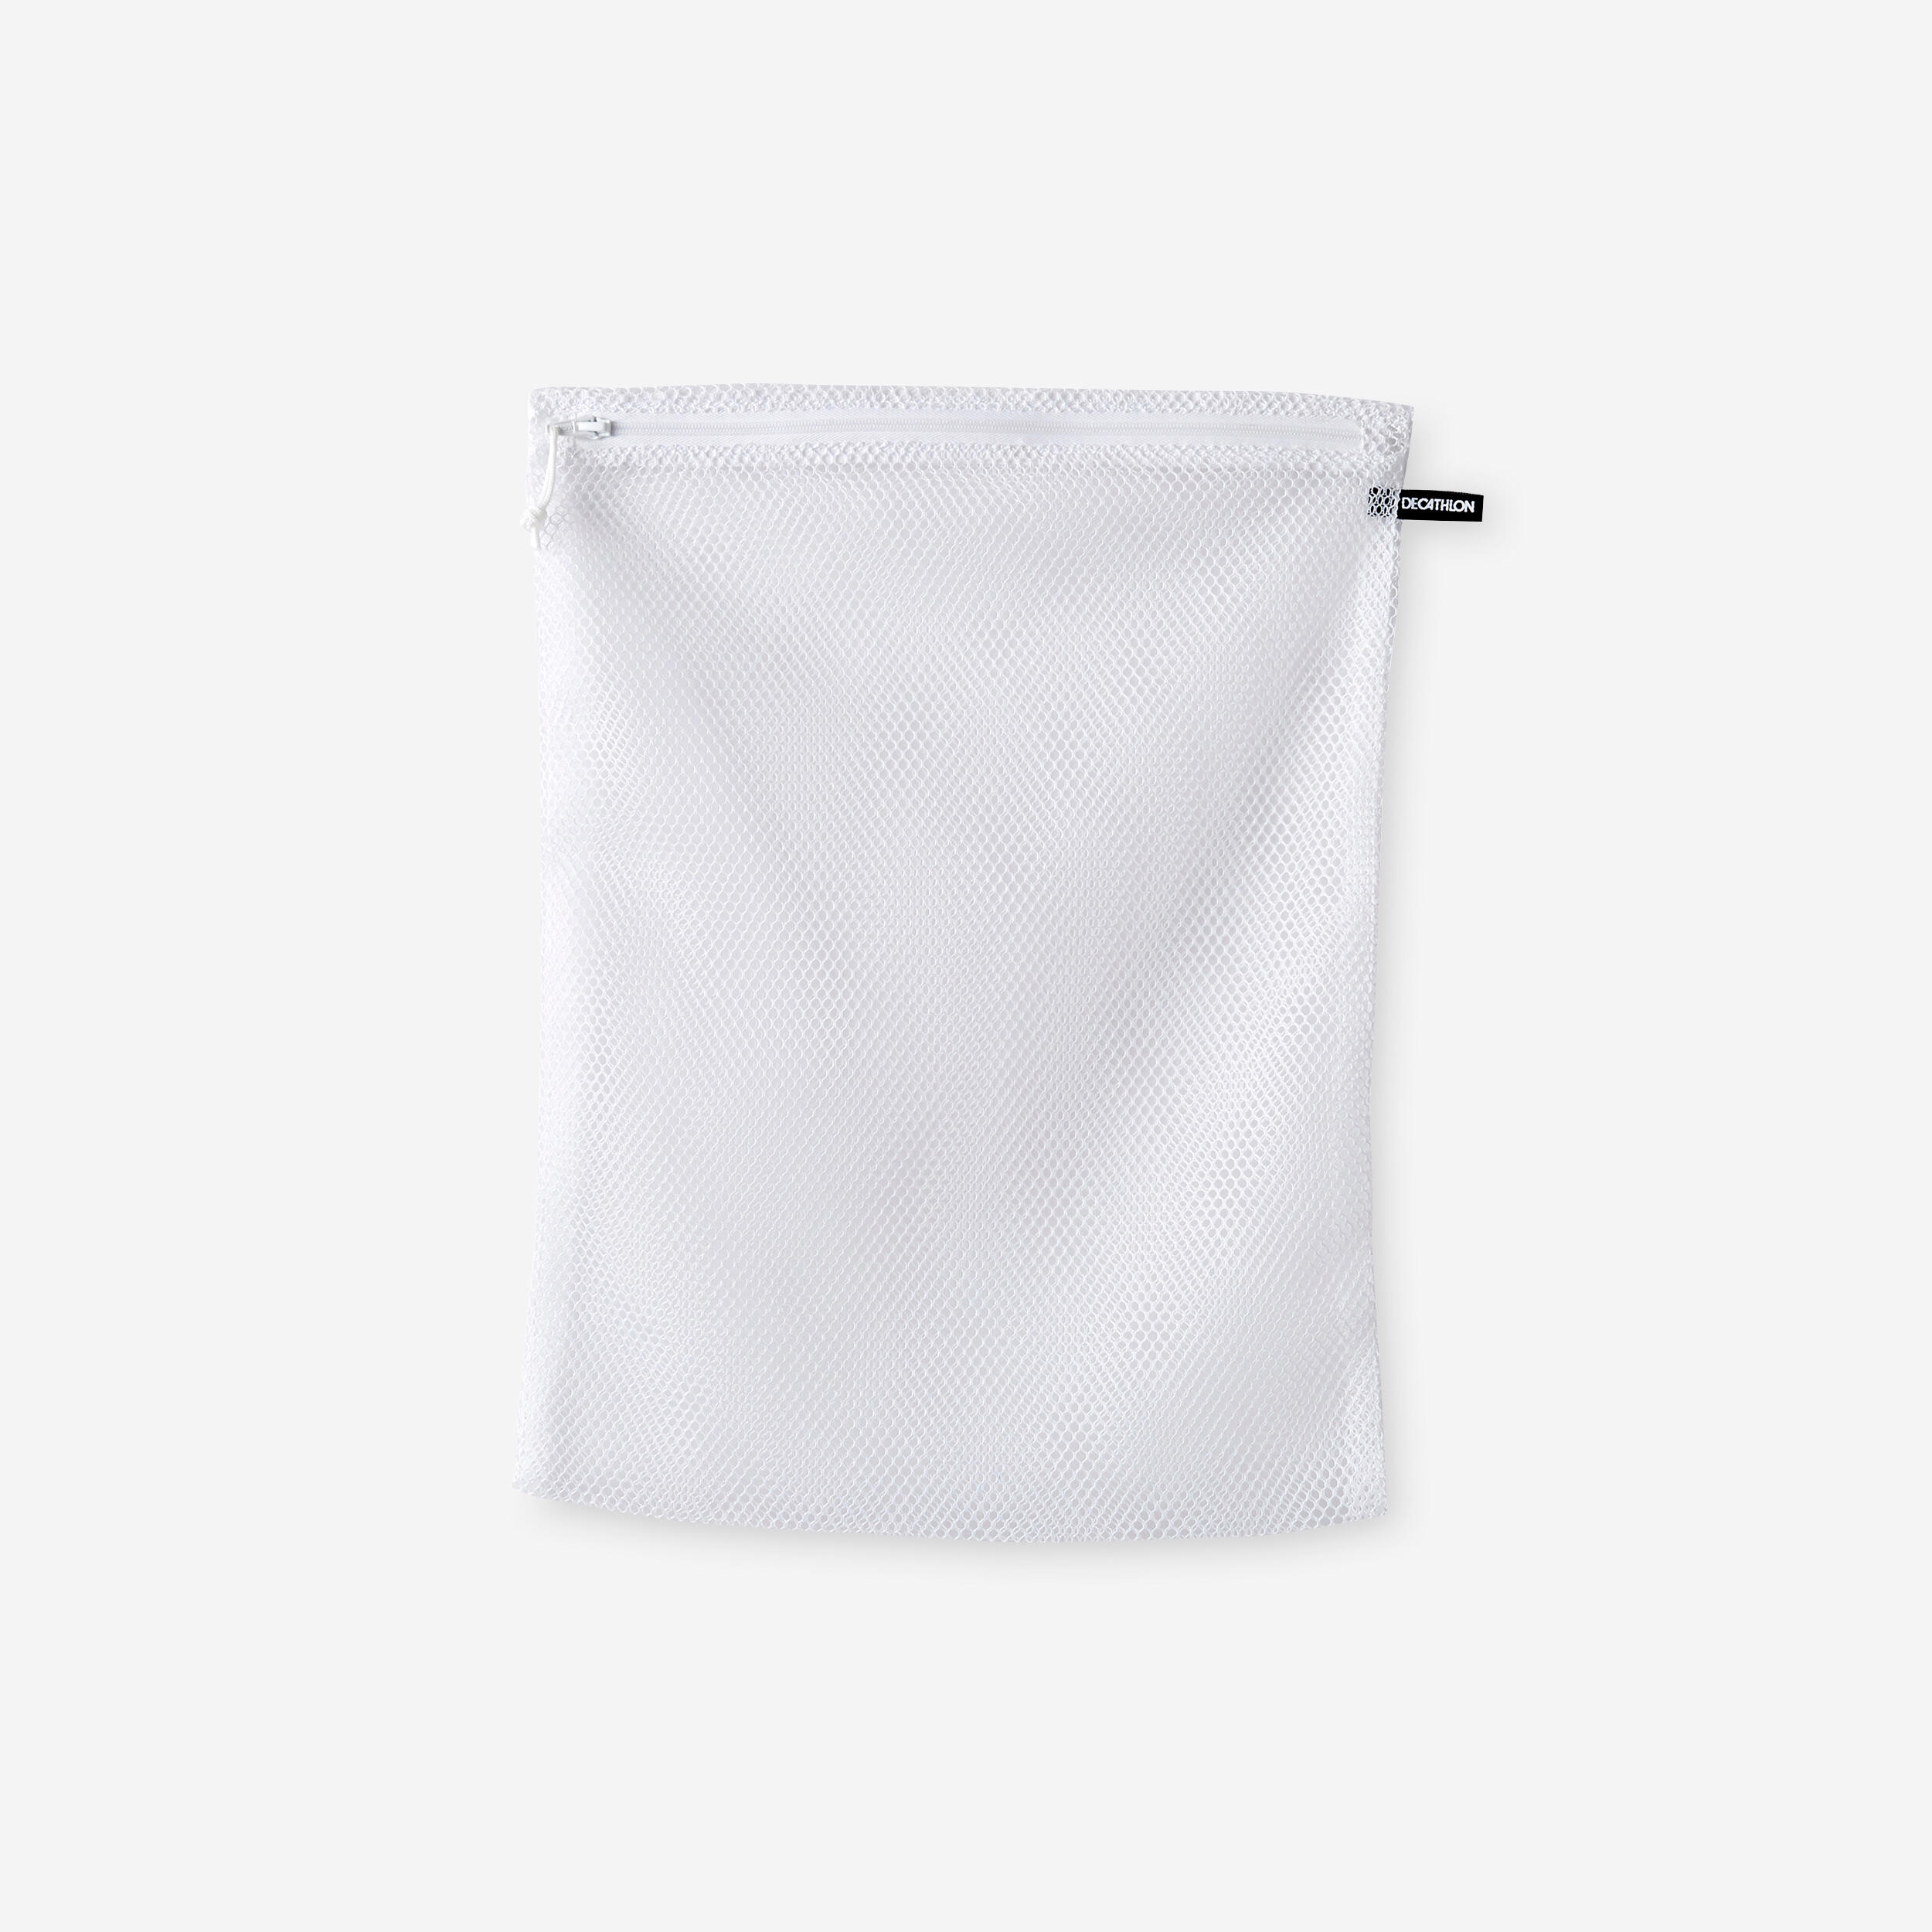 KALENJI Zipped Laundry Bag 30 x 40cm